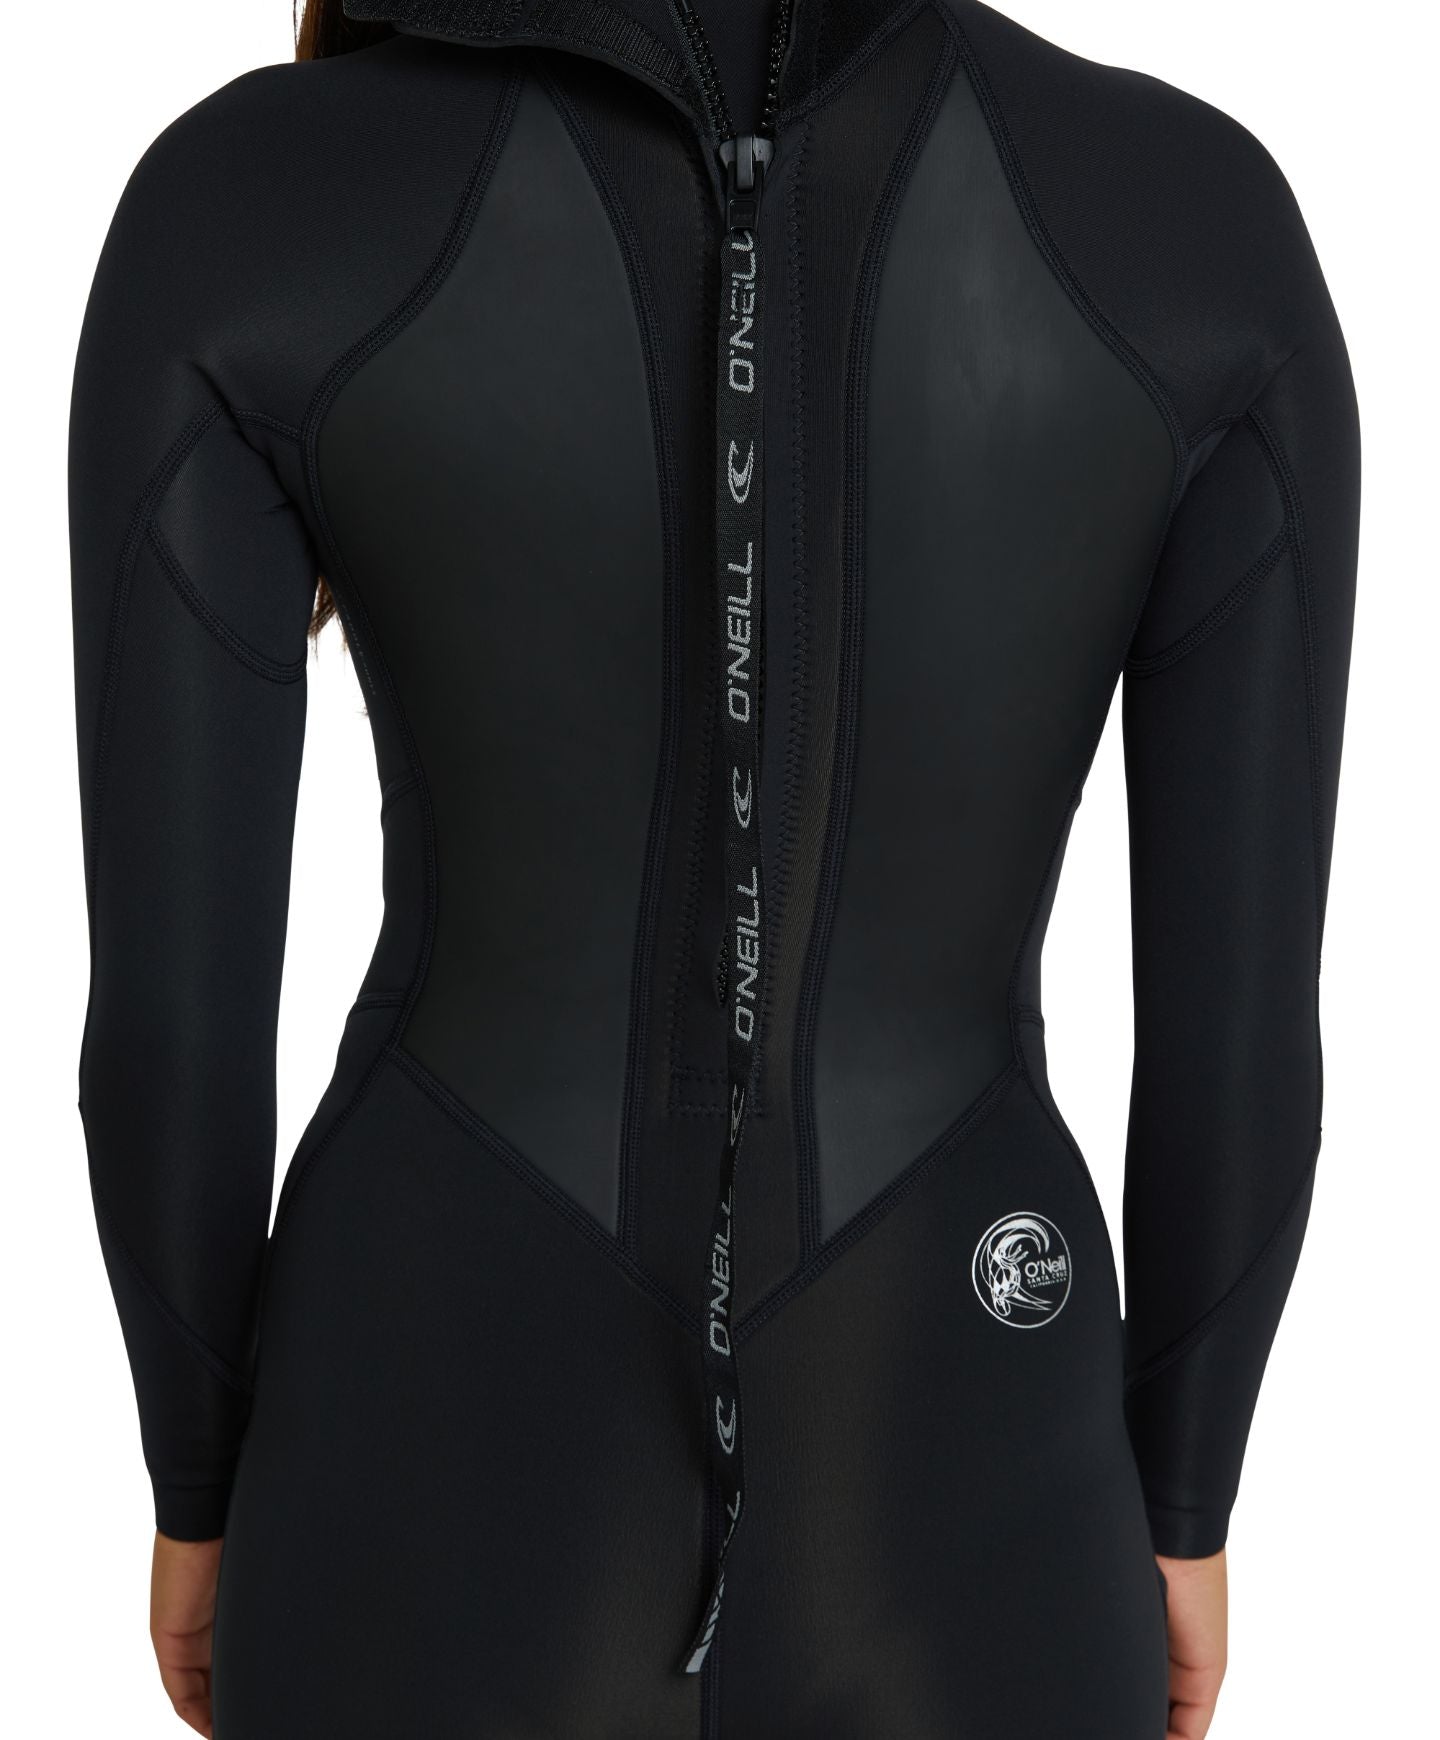 Women's Cruise BZ LS Long Spring Suit 2mm Wetsuit - Black